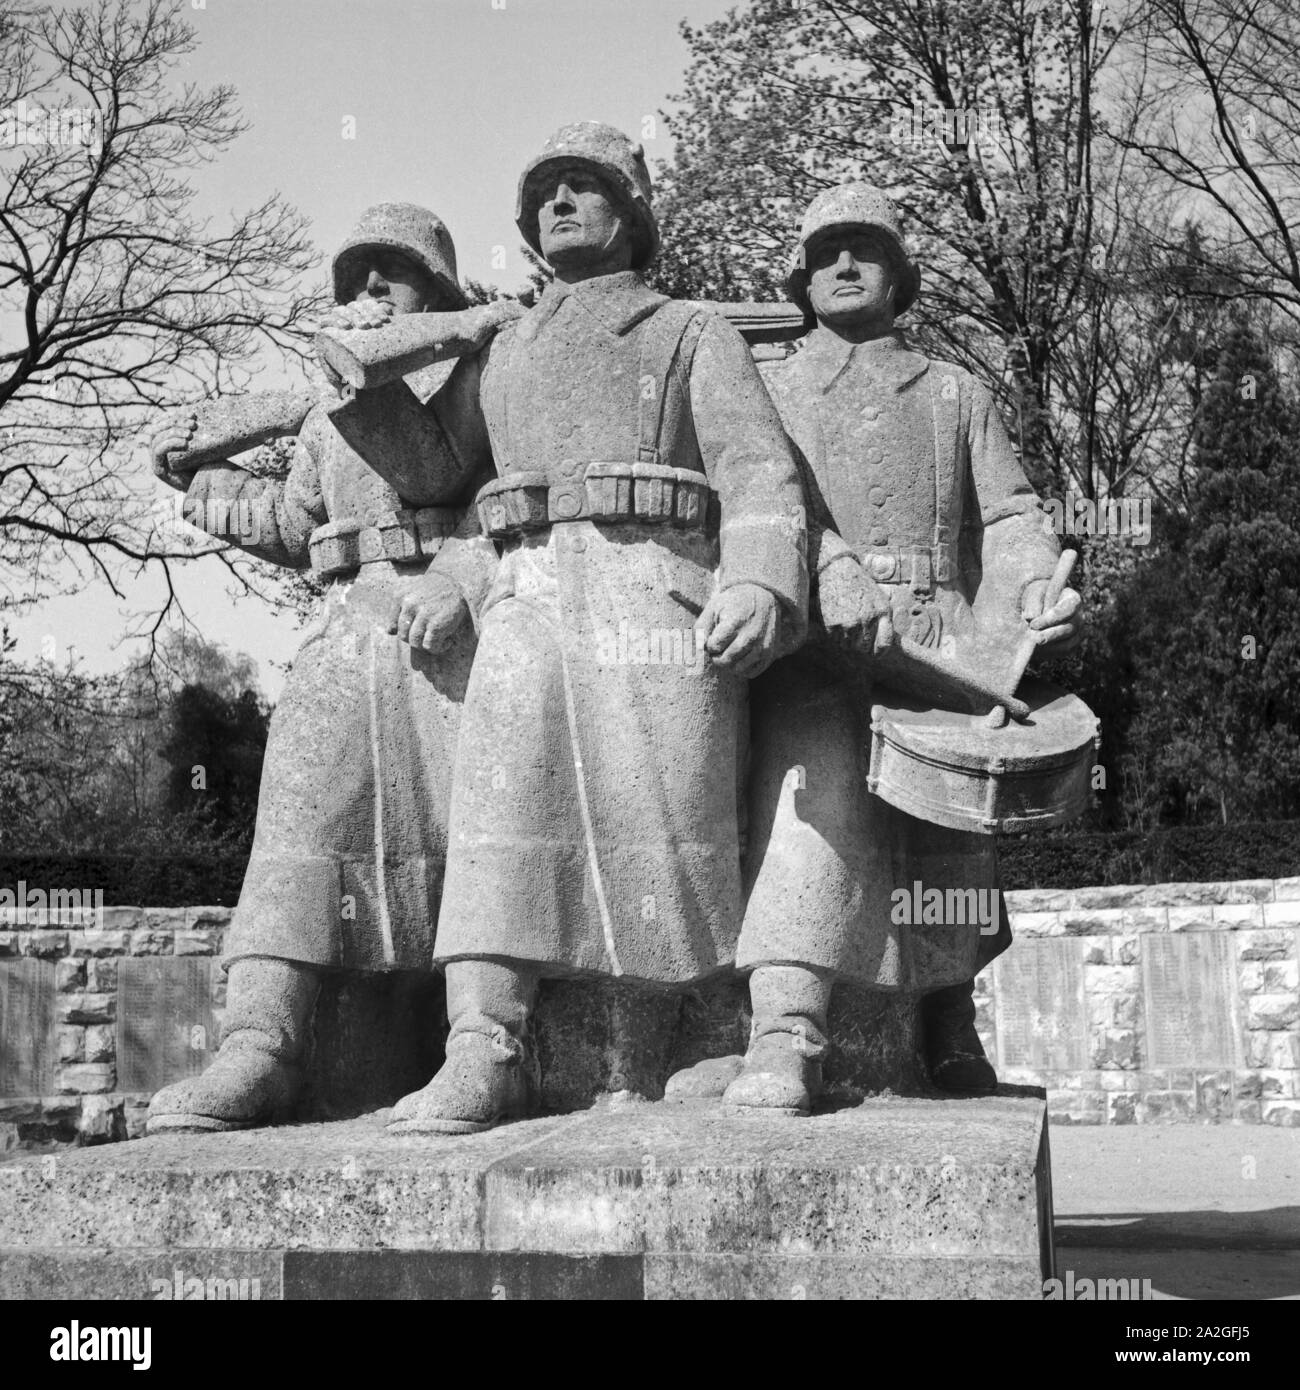 Ehrenmal für die Gefallenen des 1. Weltkriegs in Frankfurt am Main, Deutschland 1930er Jahre. Monumento ai caduti della prima guerra mondiale a Francoforte, Germania 1930s. Foto Stock